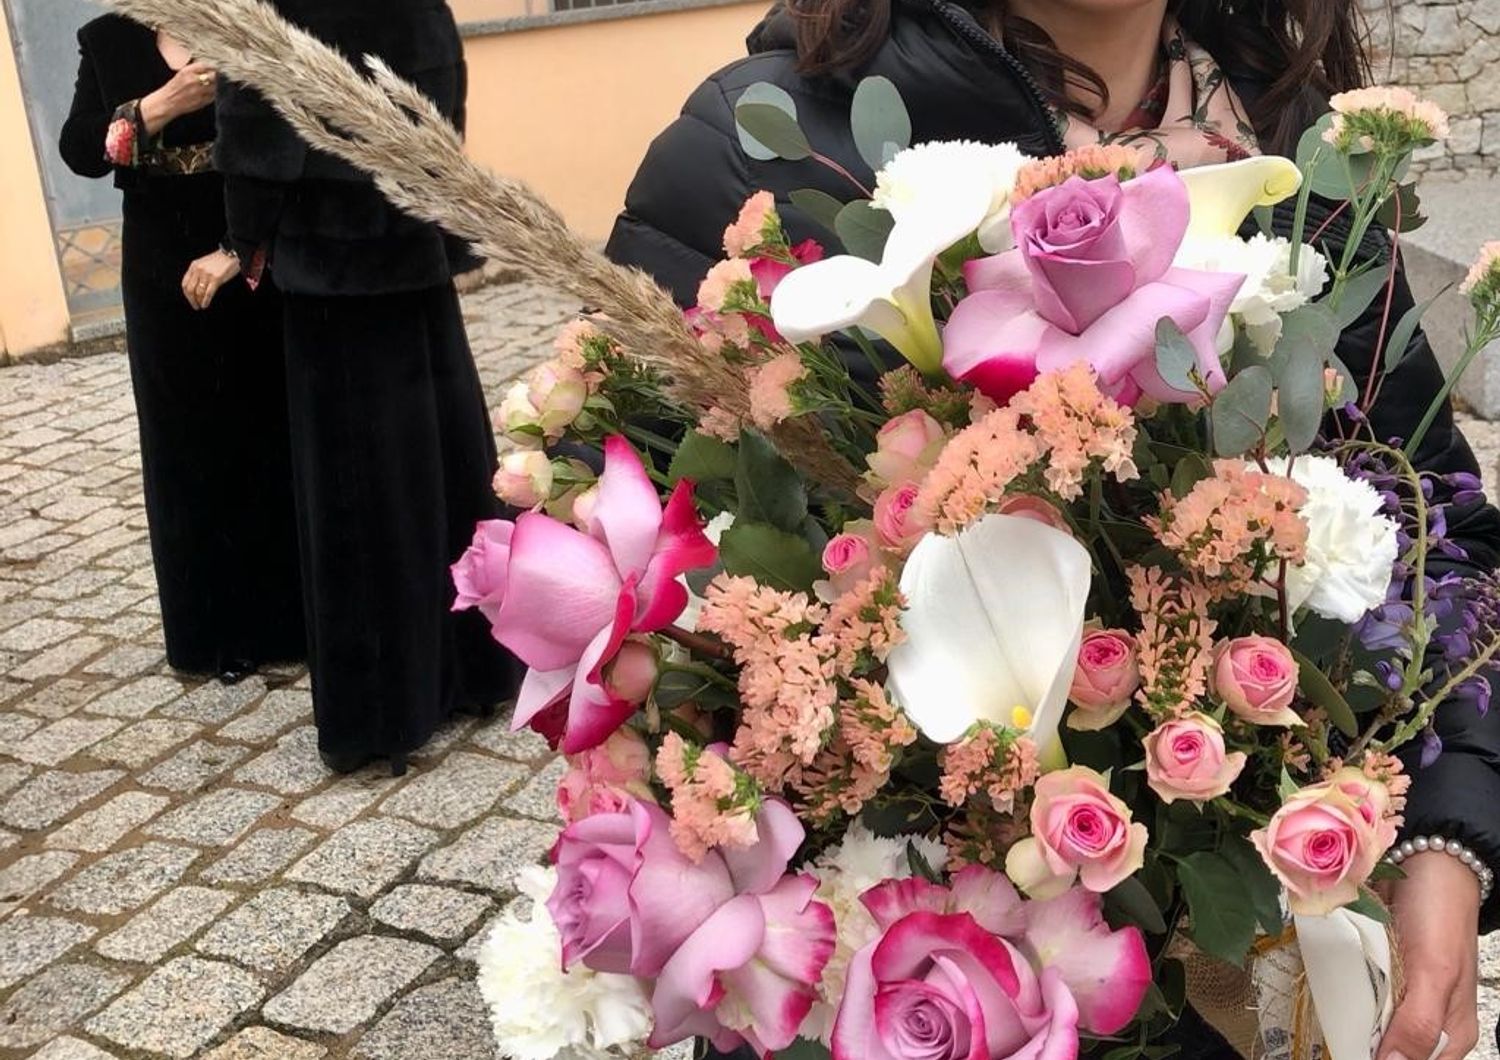 Il bouquet di nozze di Grazia Deledda riprodotto dal floricoltore nuorese Giuseppe Flore